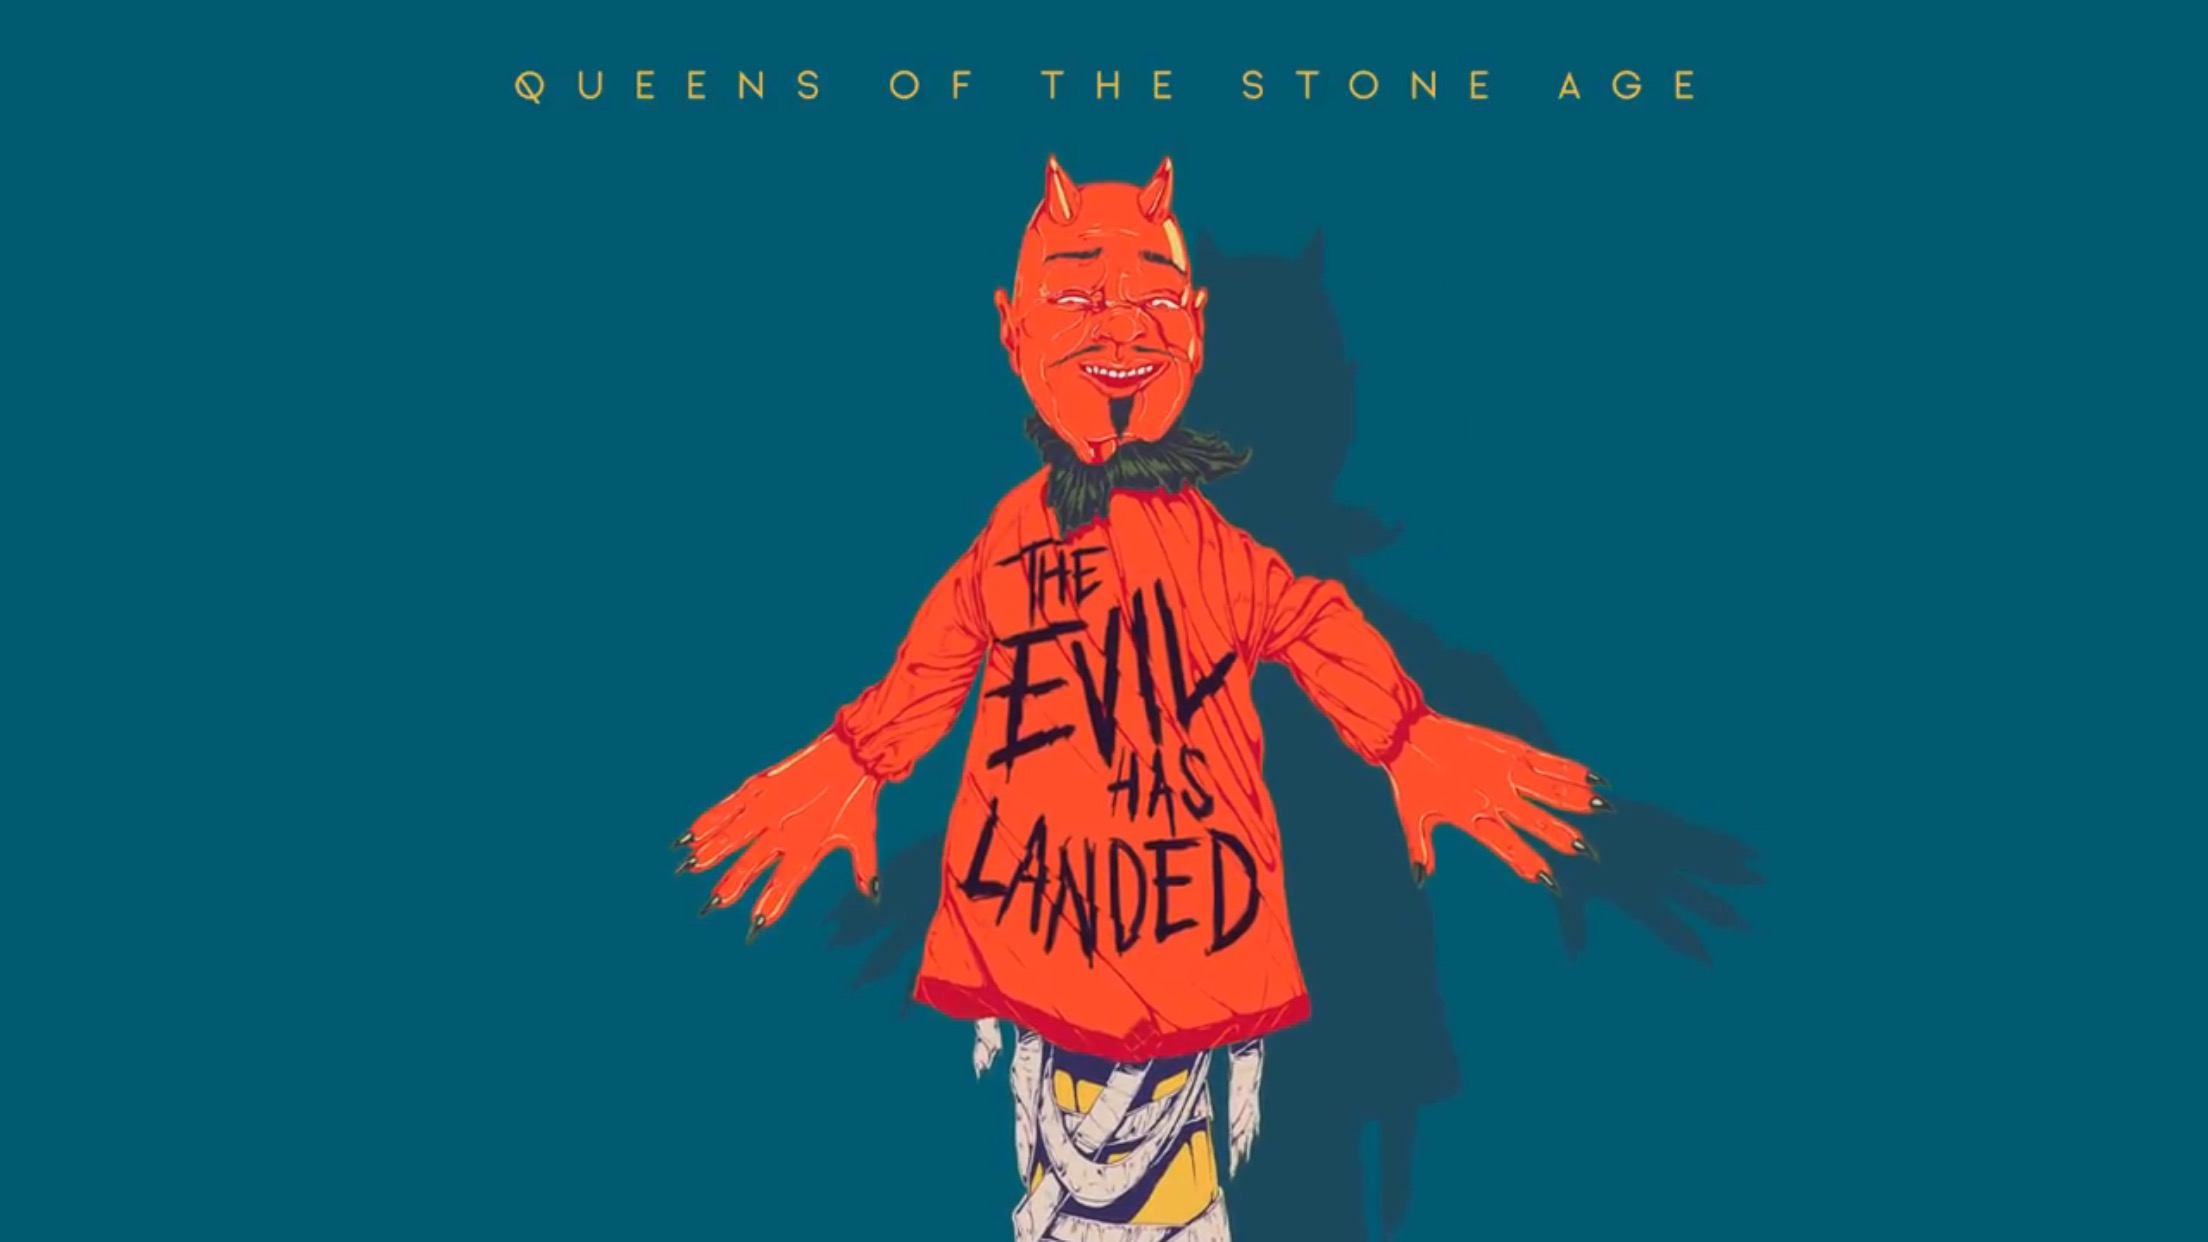 Ακούστε ΤΩΡΑ το νέο single των Queens of the Stone Age